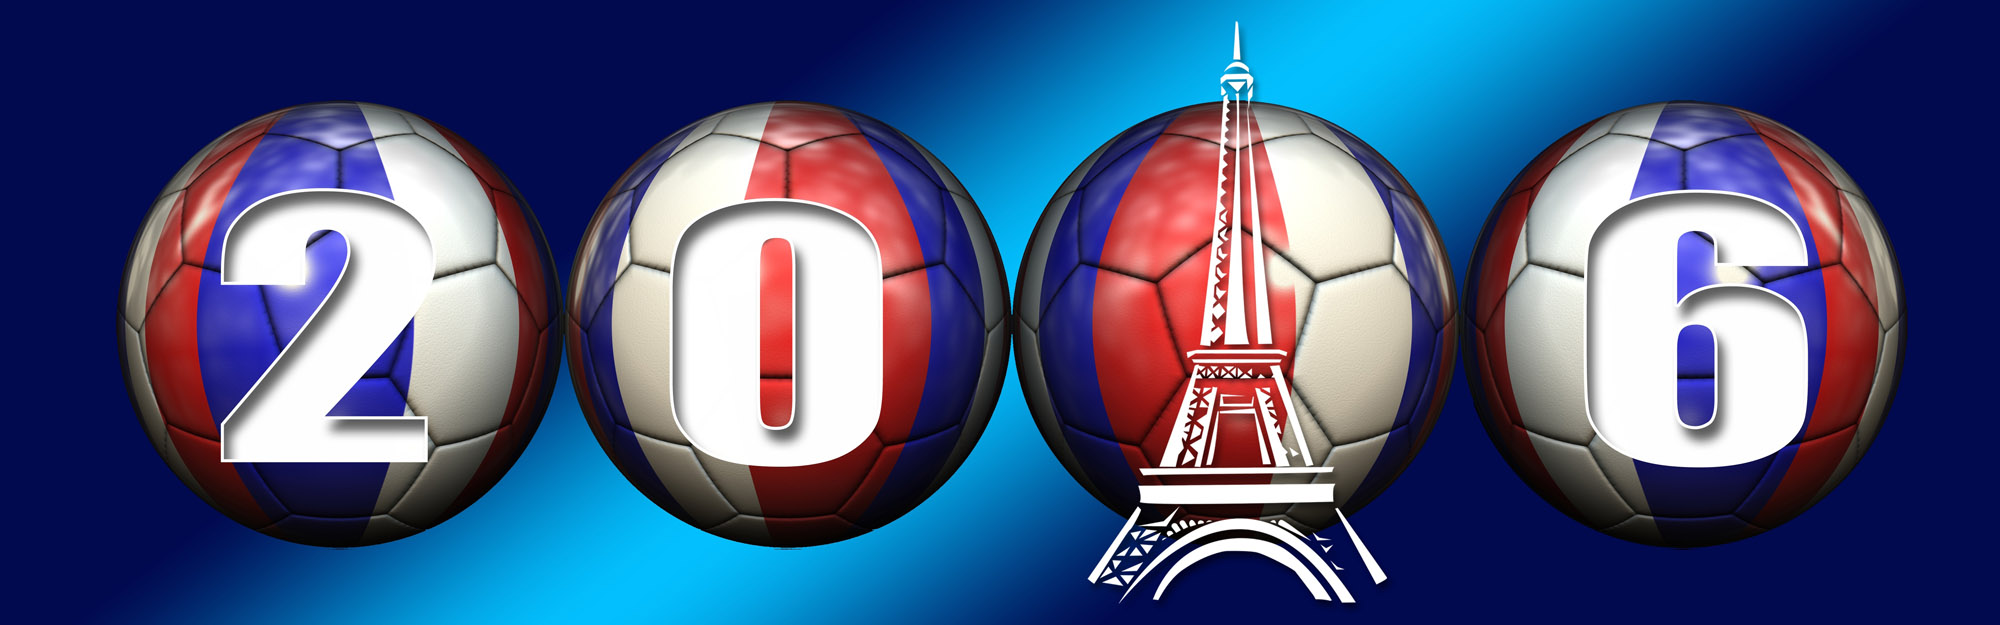 Fußball Euro 2016 in Frankreich